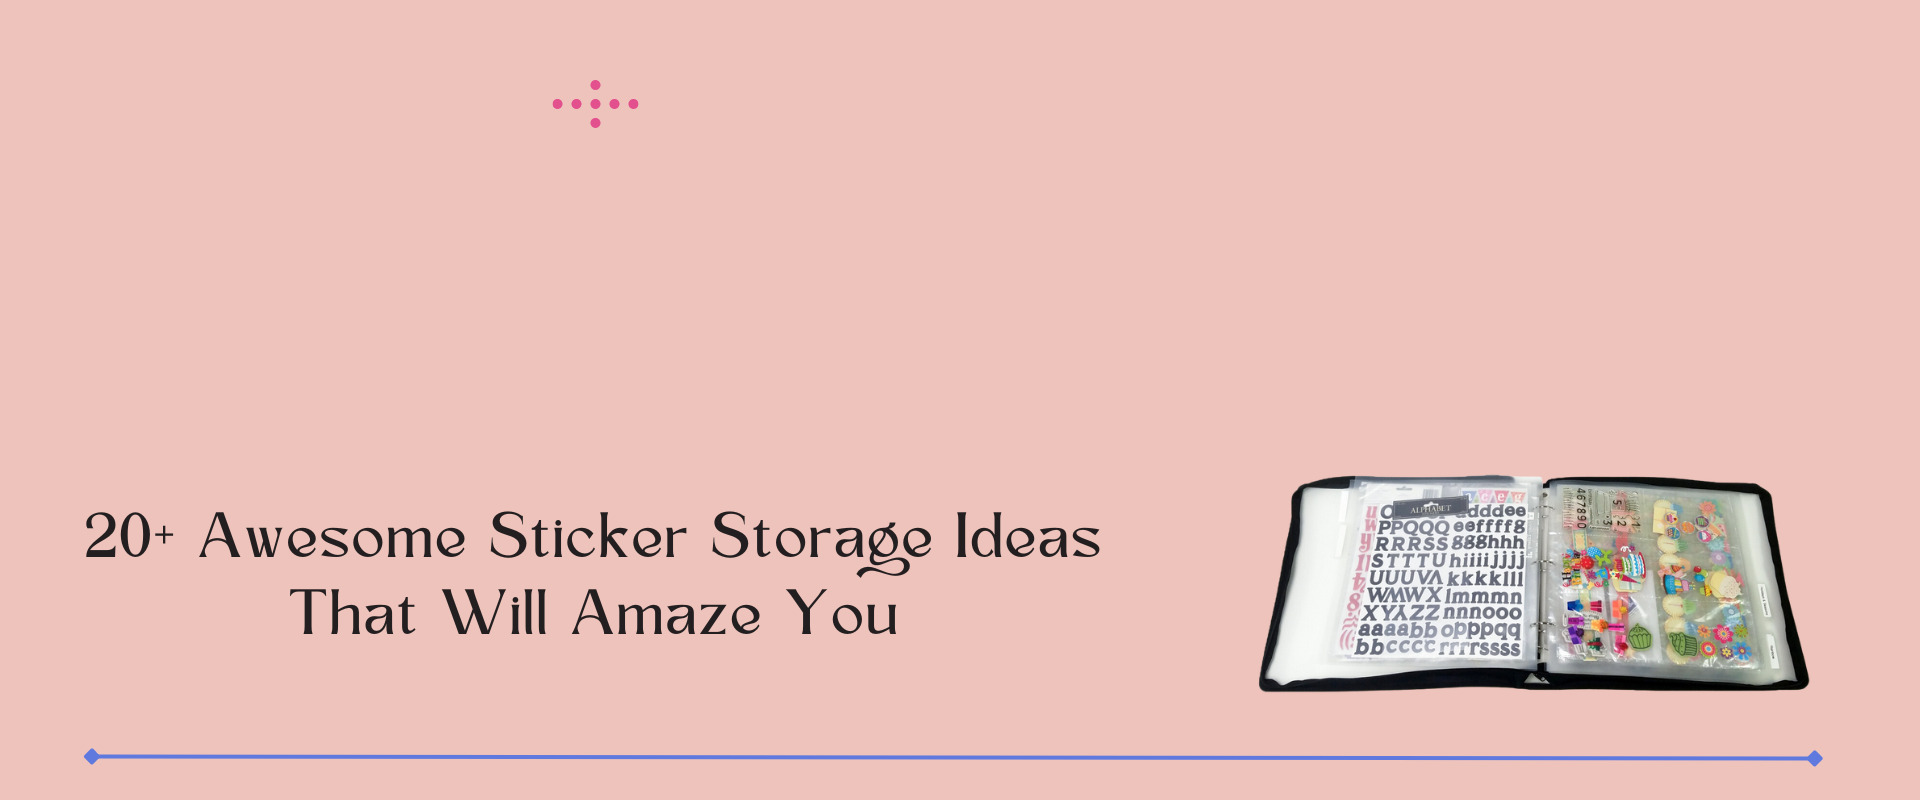 sticker storage ideas